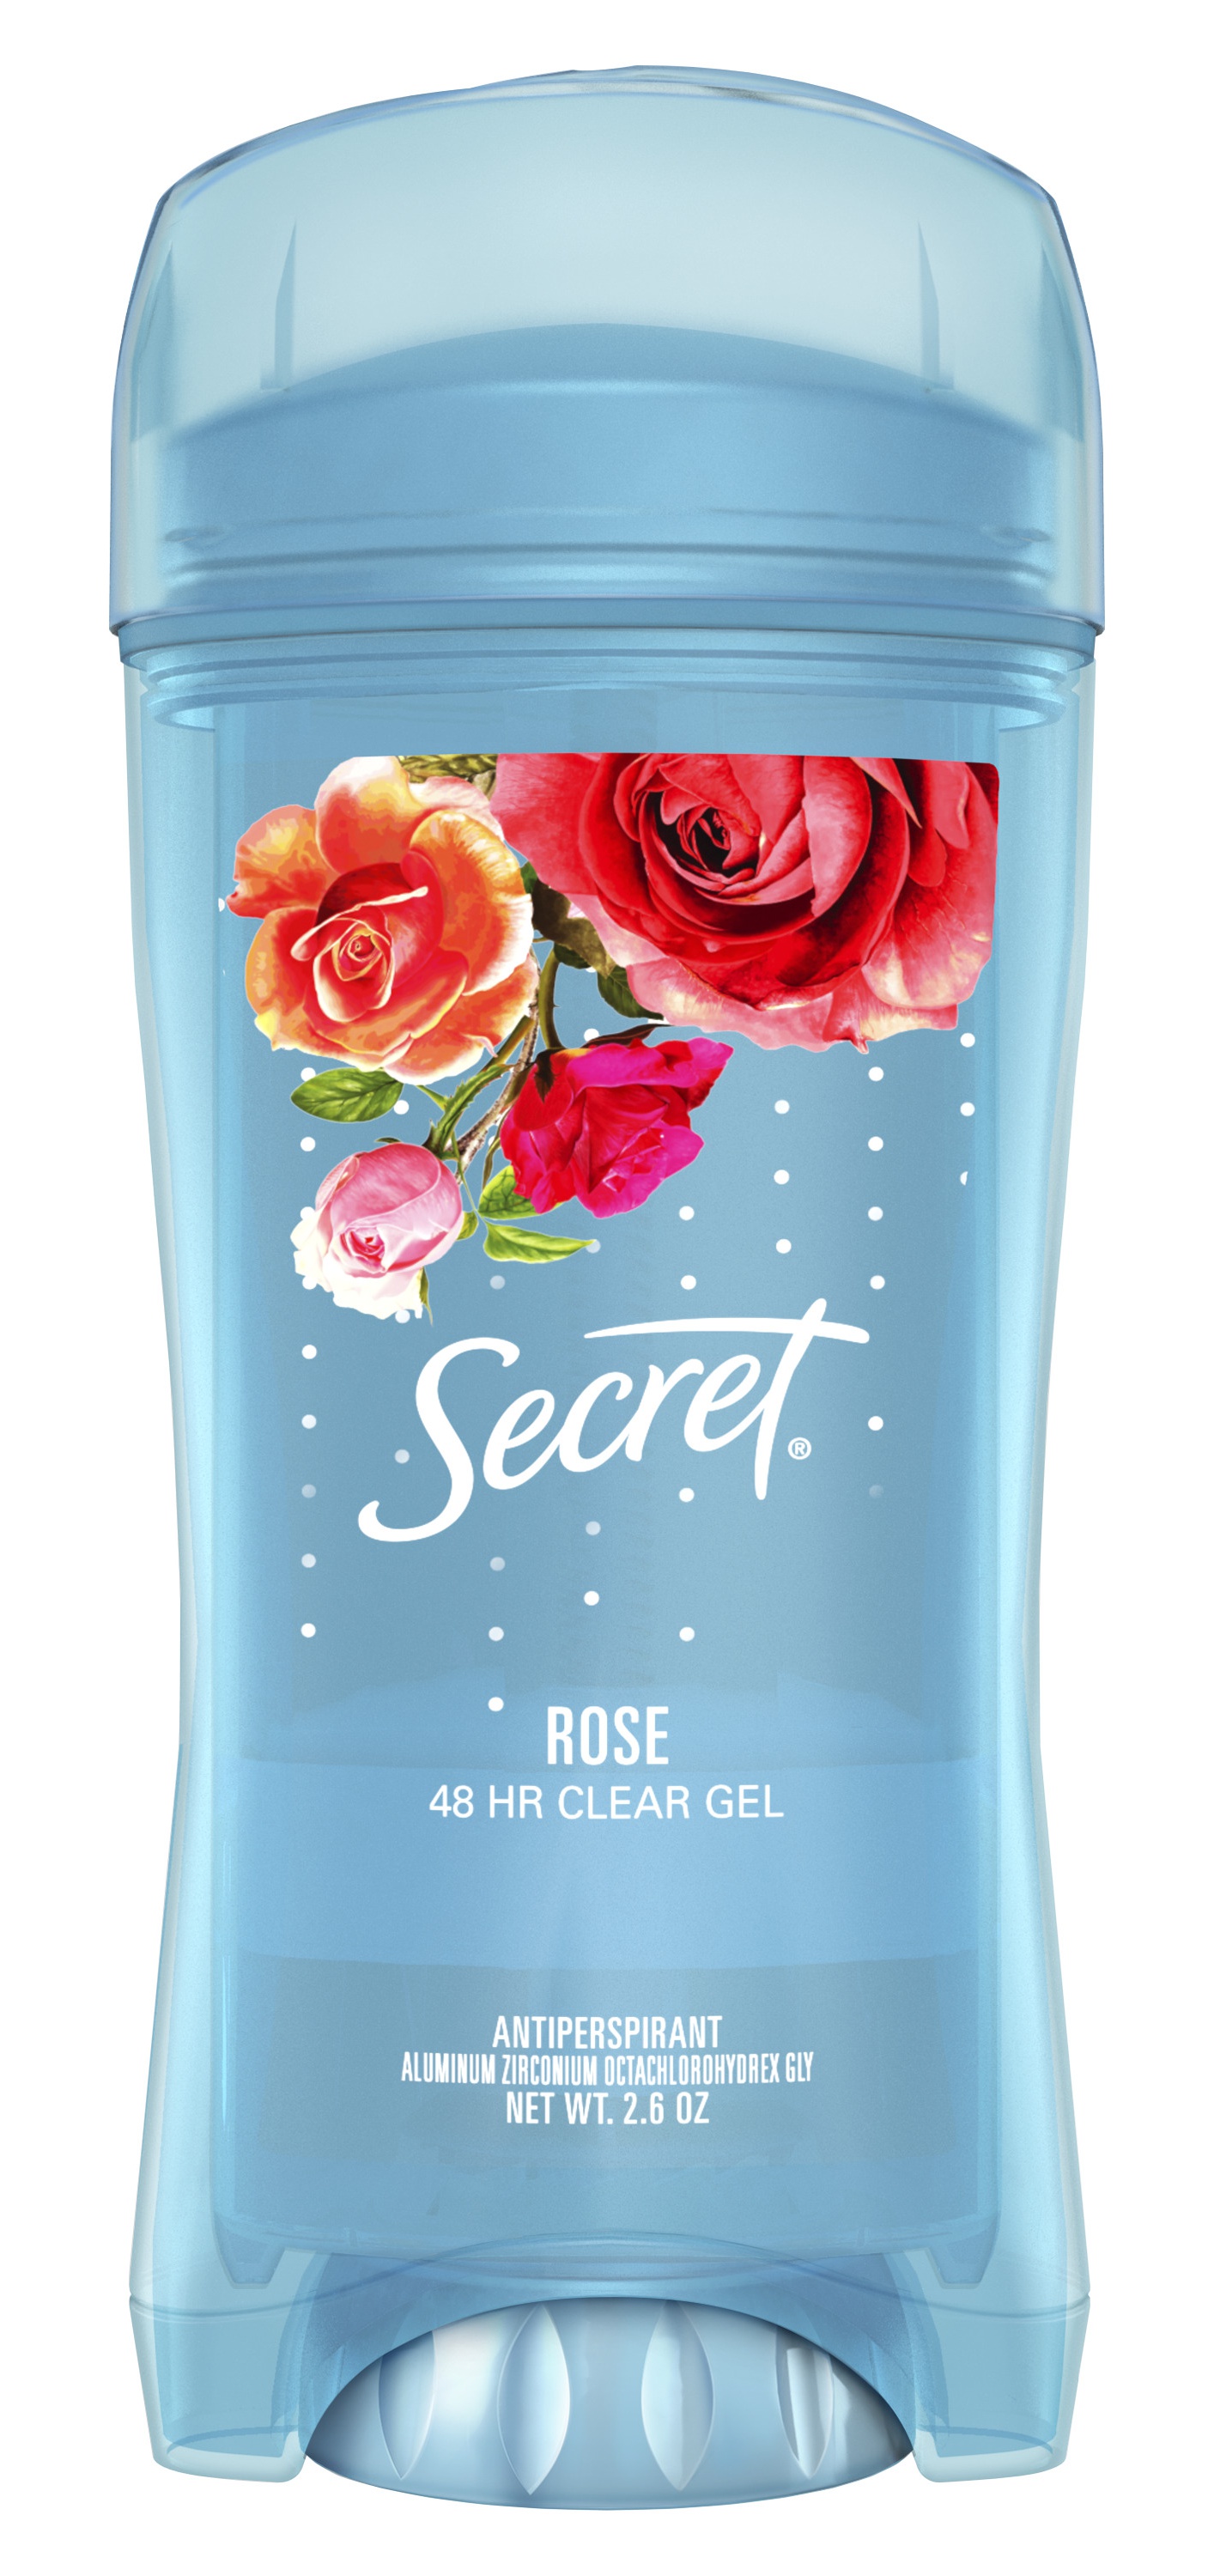 Secret Rose Antiperspirant Clear Gel